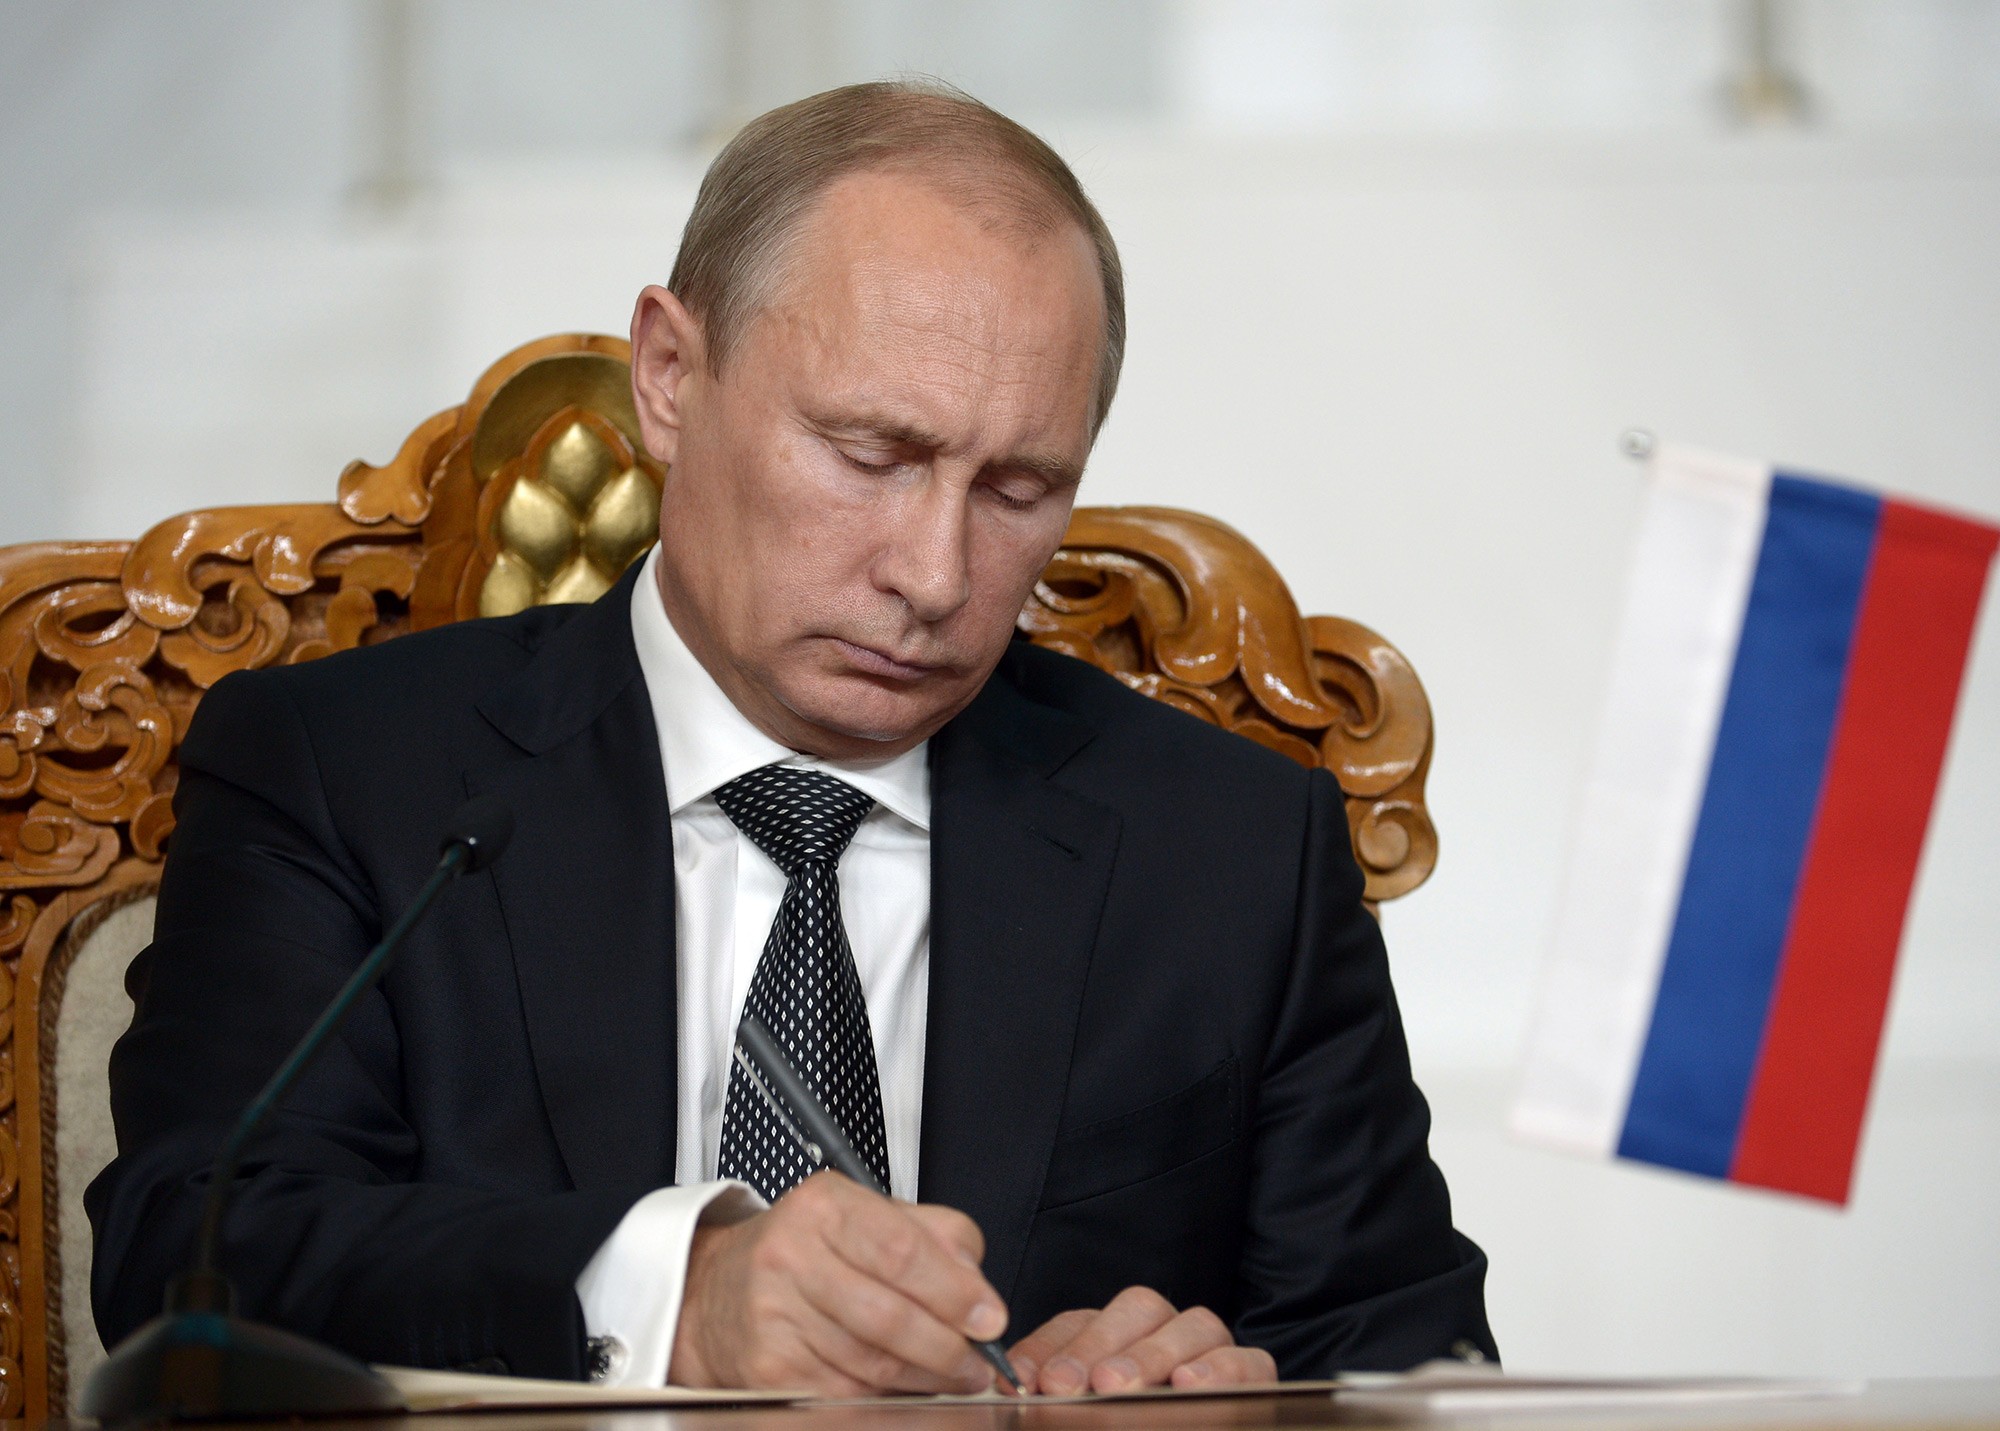 Чистка эшелонов власти продолжается: Путин уволил главу внутренней политики